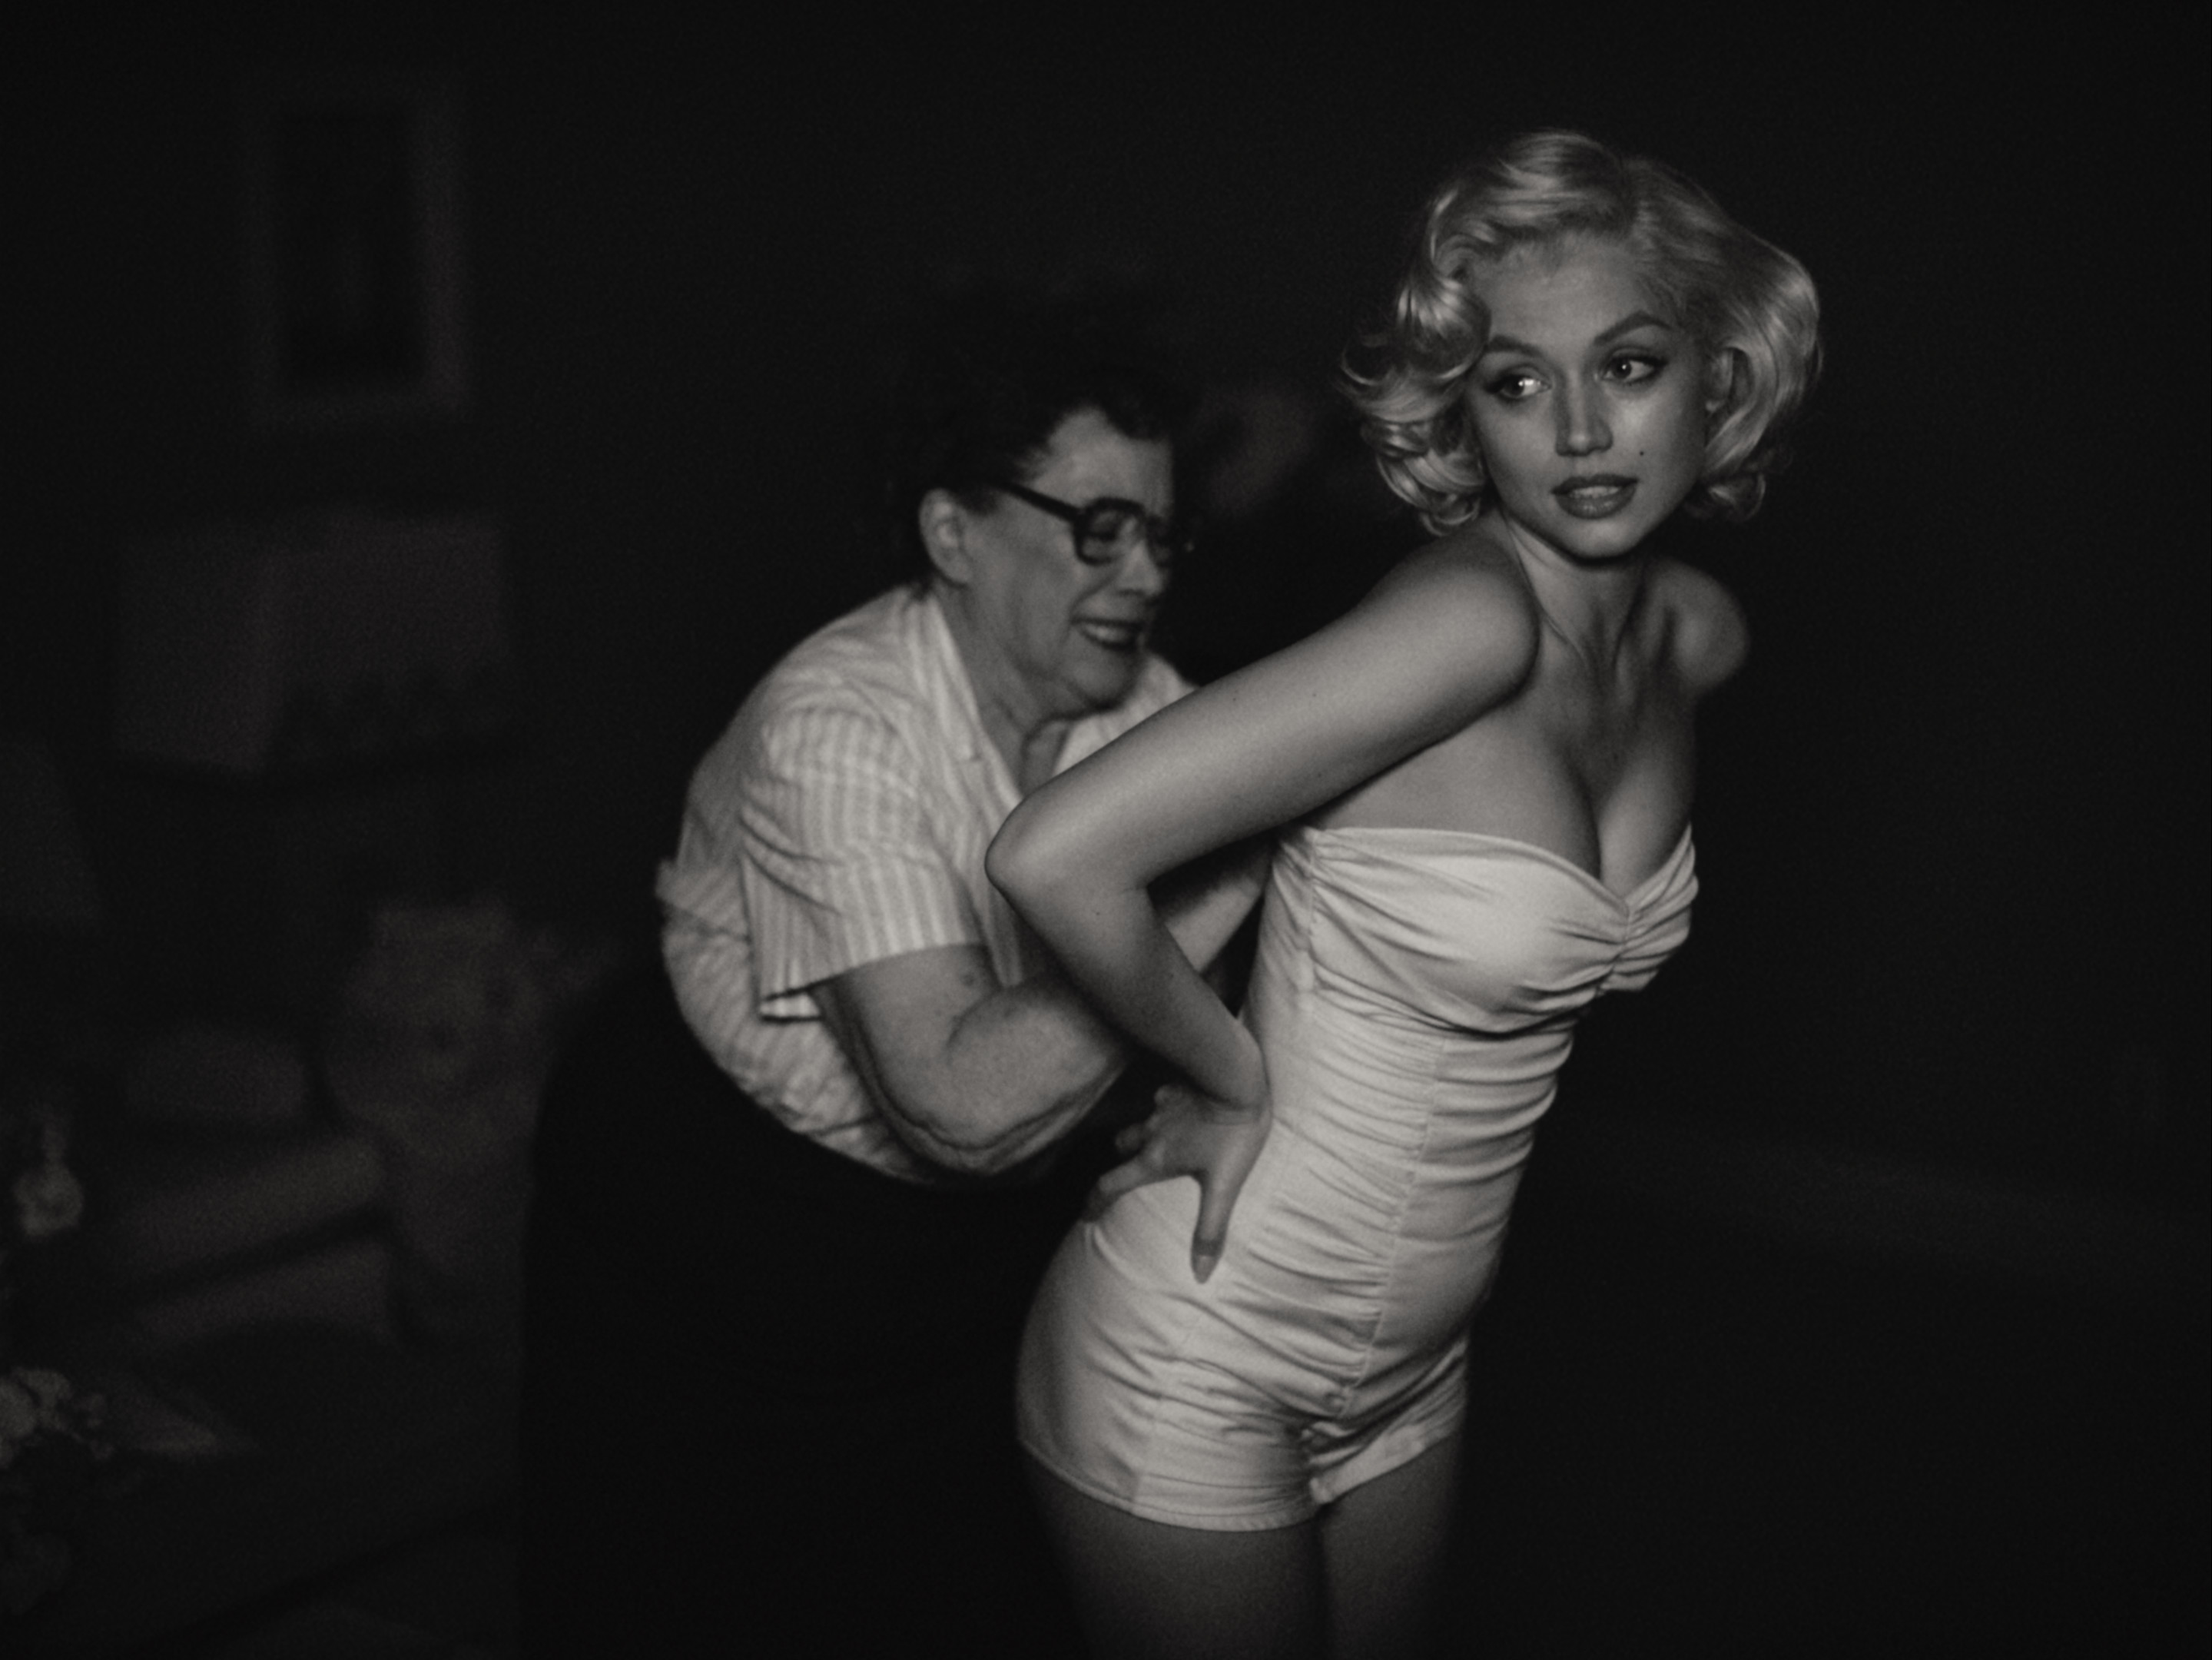 Ana de Armas as Marilyn Monroe in a still from Blonde. Photo: Netflix